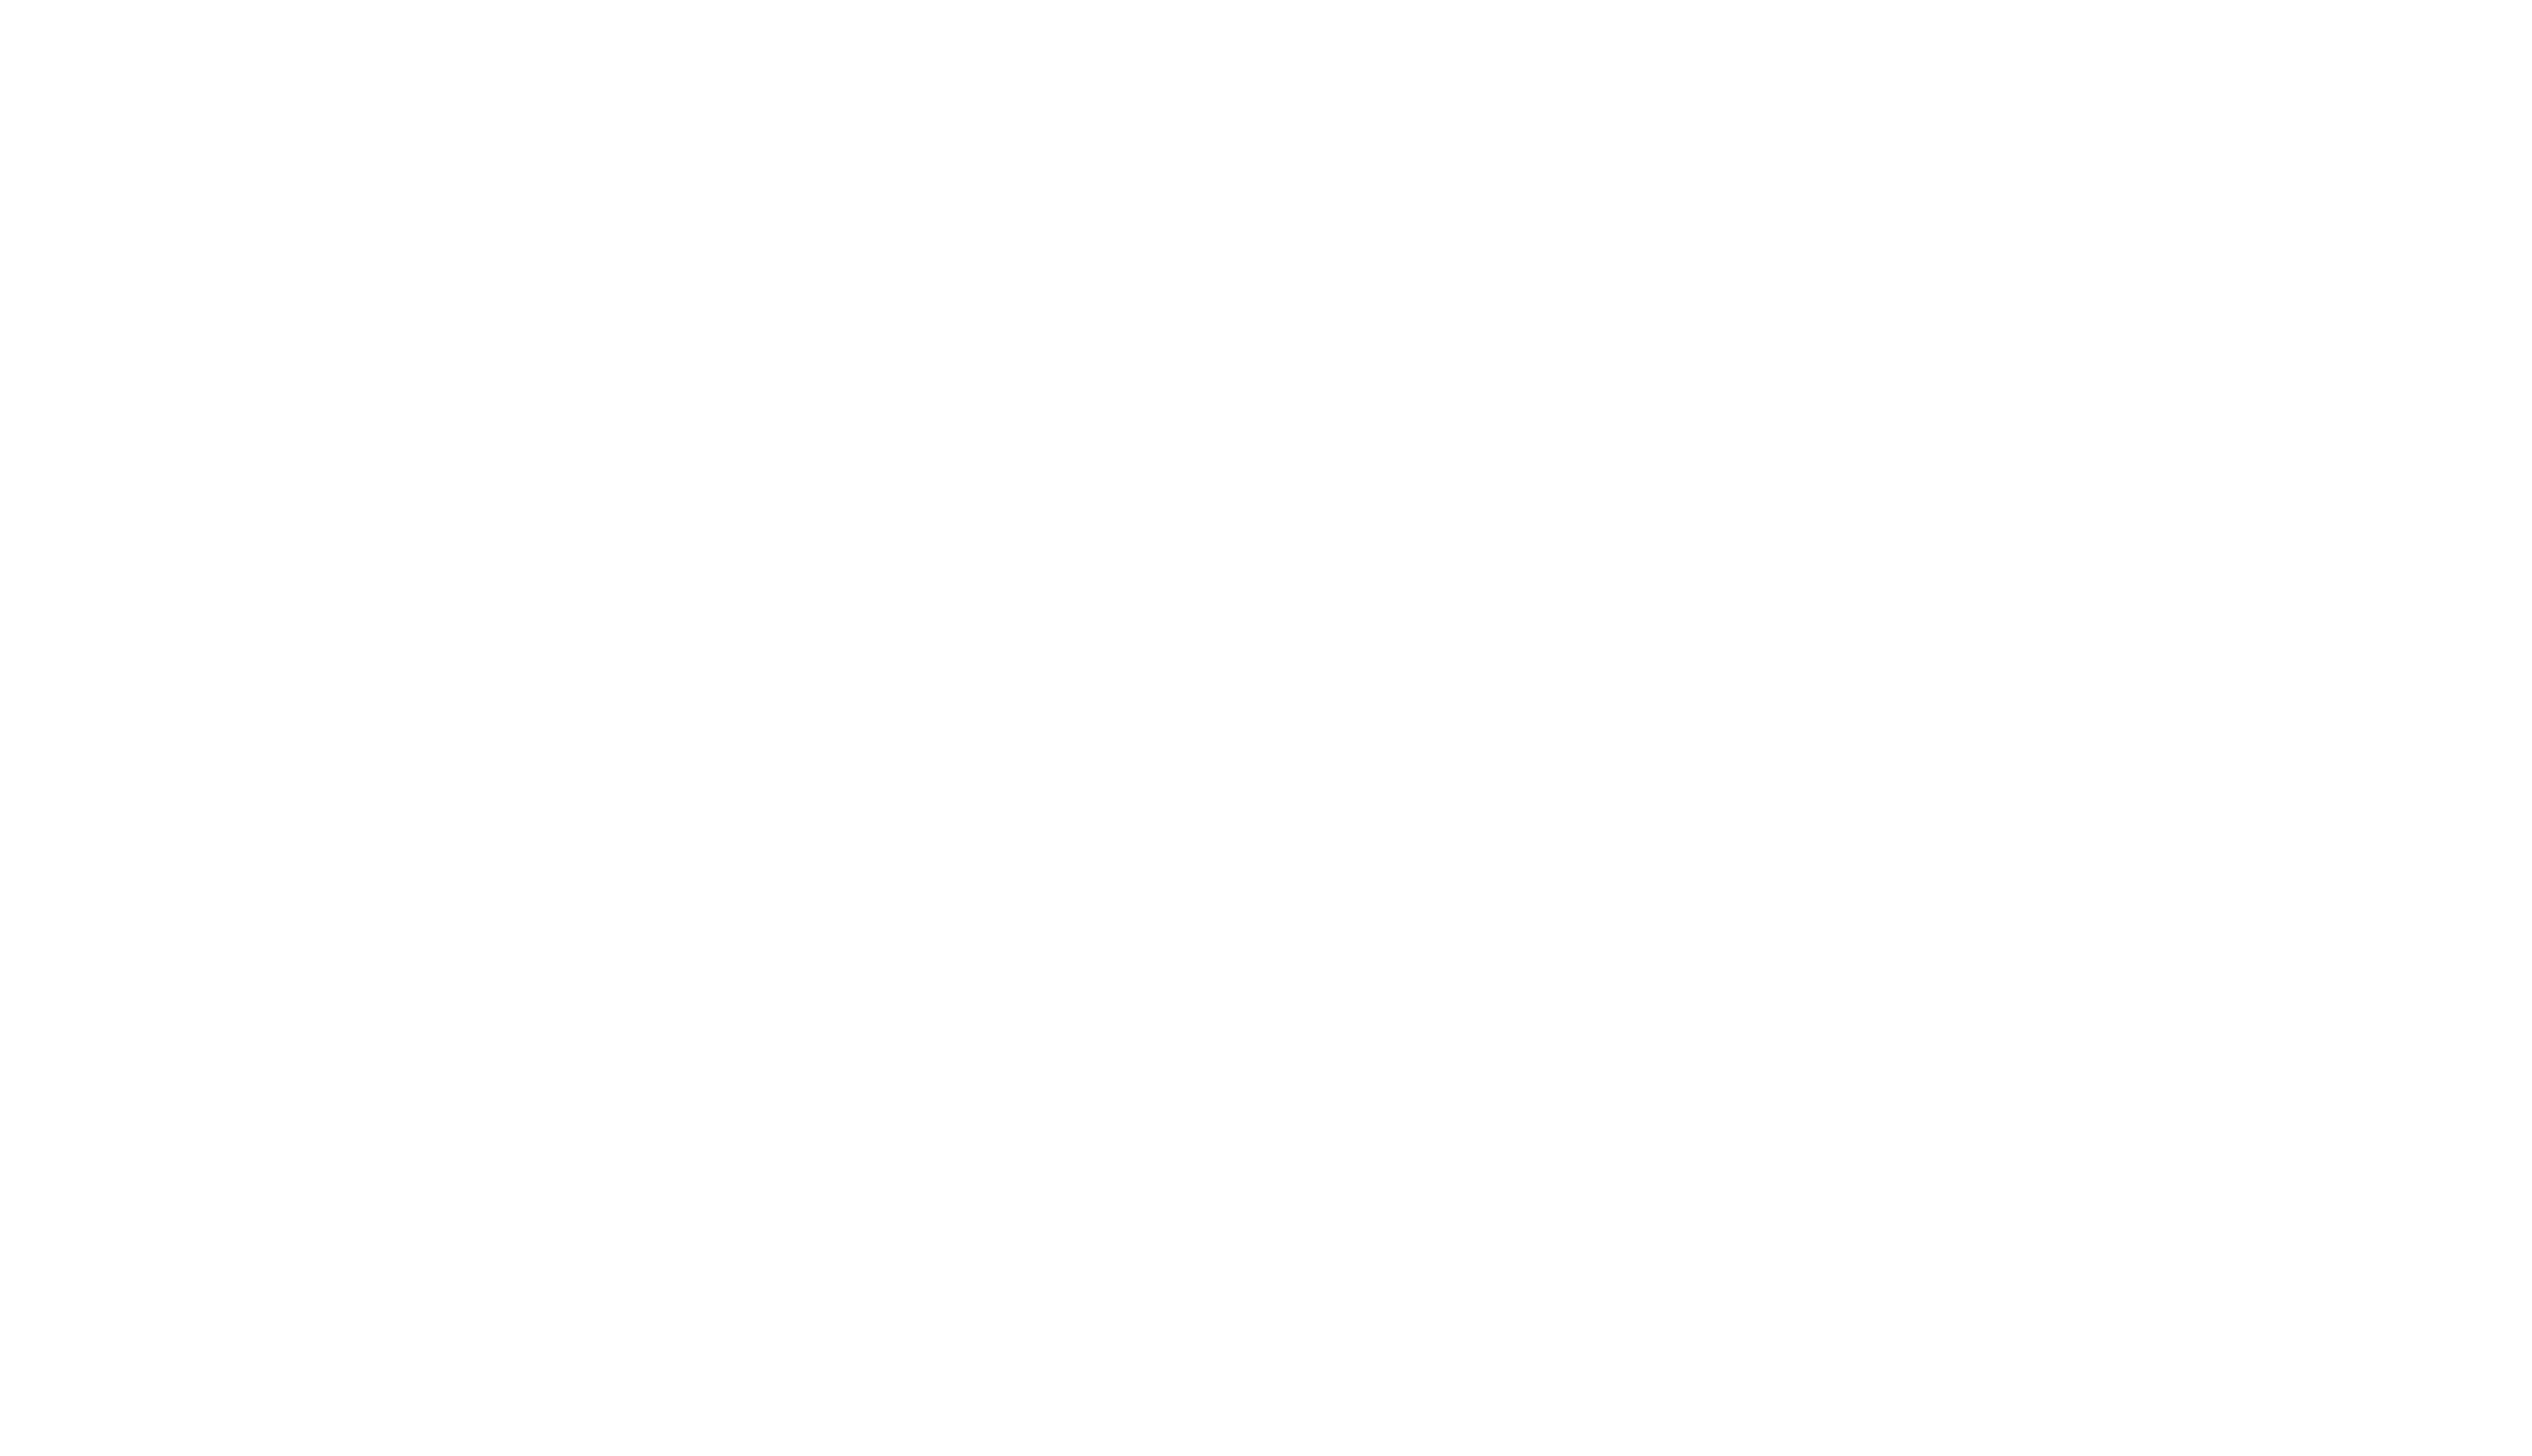 Dessin technique d'un BLK247 avec les dimensions